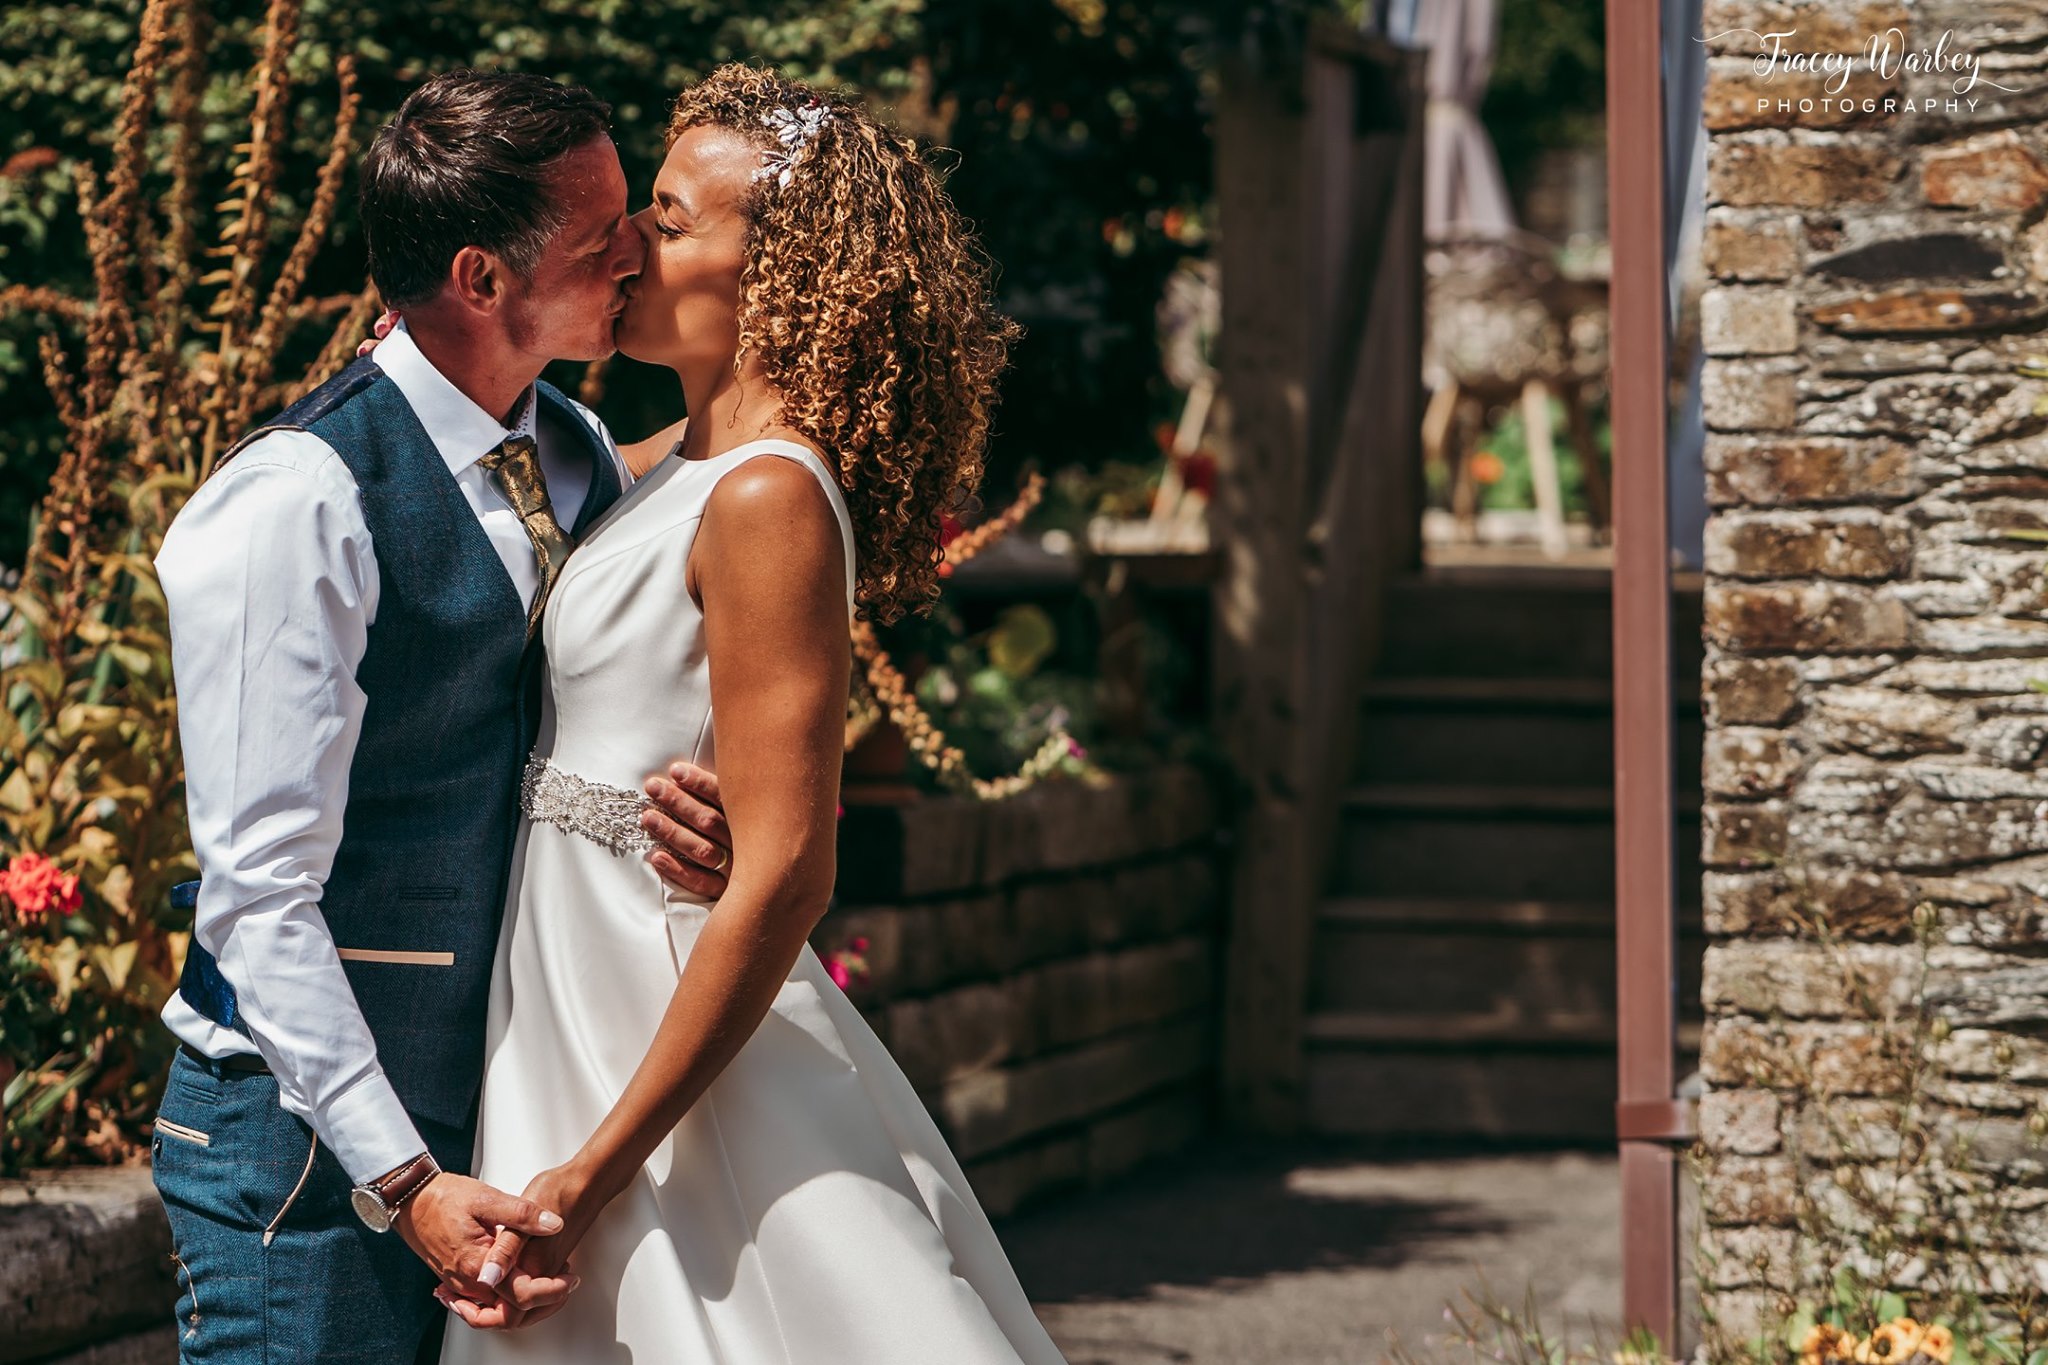 Lower Barns Elopement Weddings - Intimate Weddings Cornwall